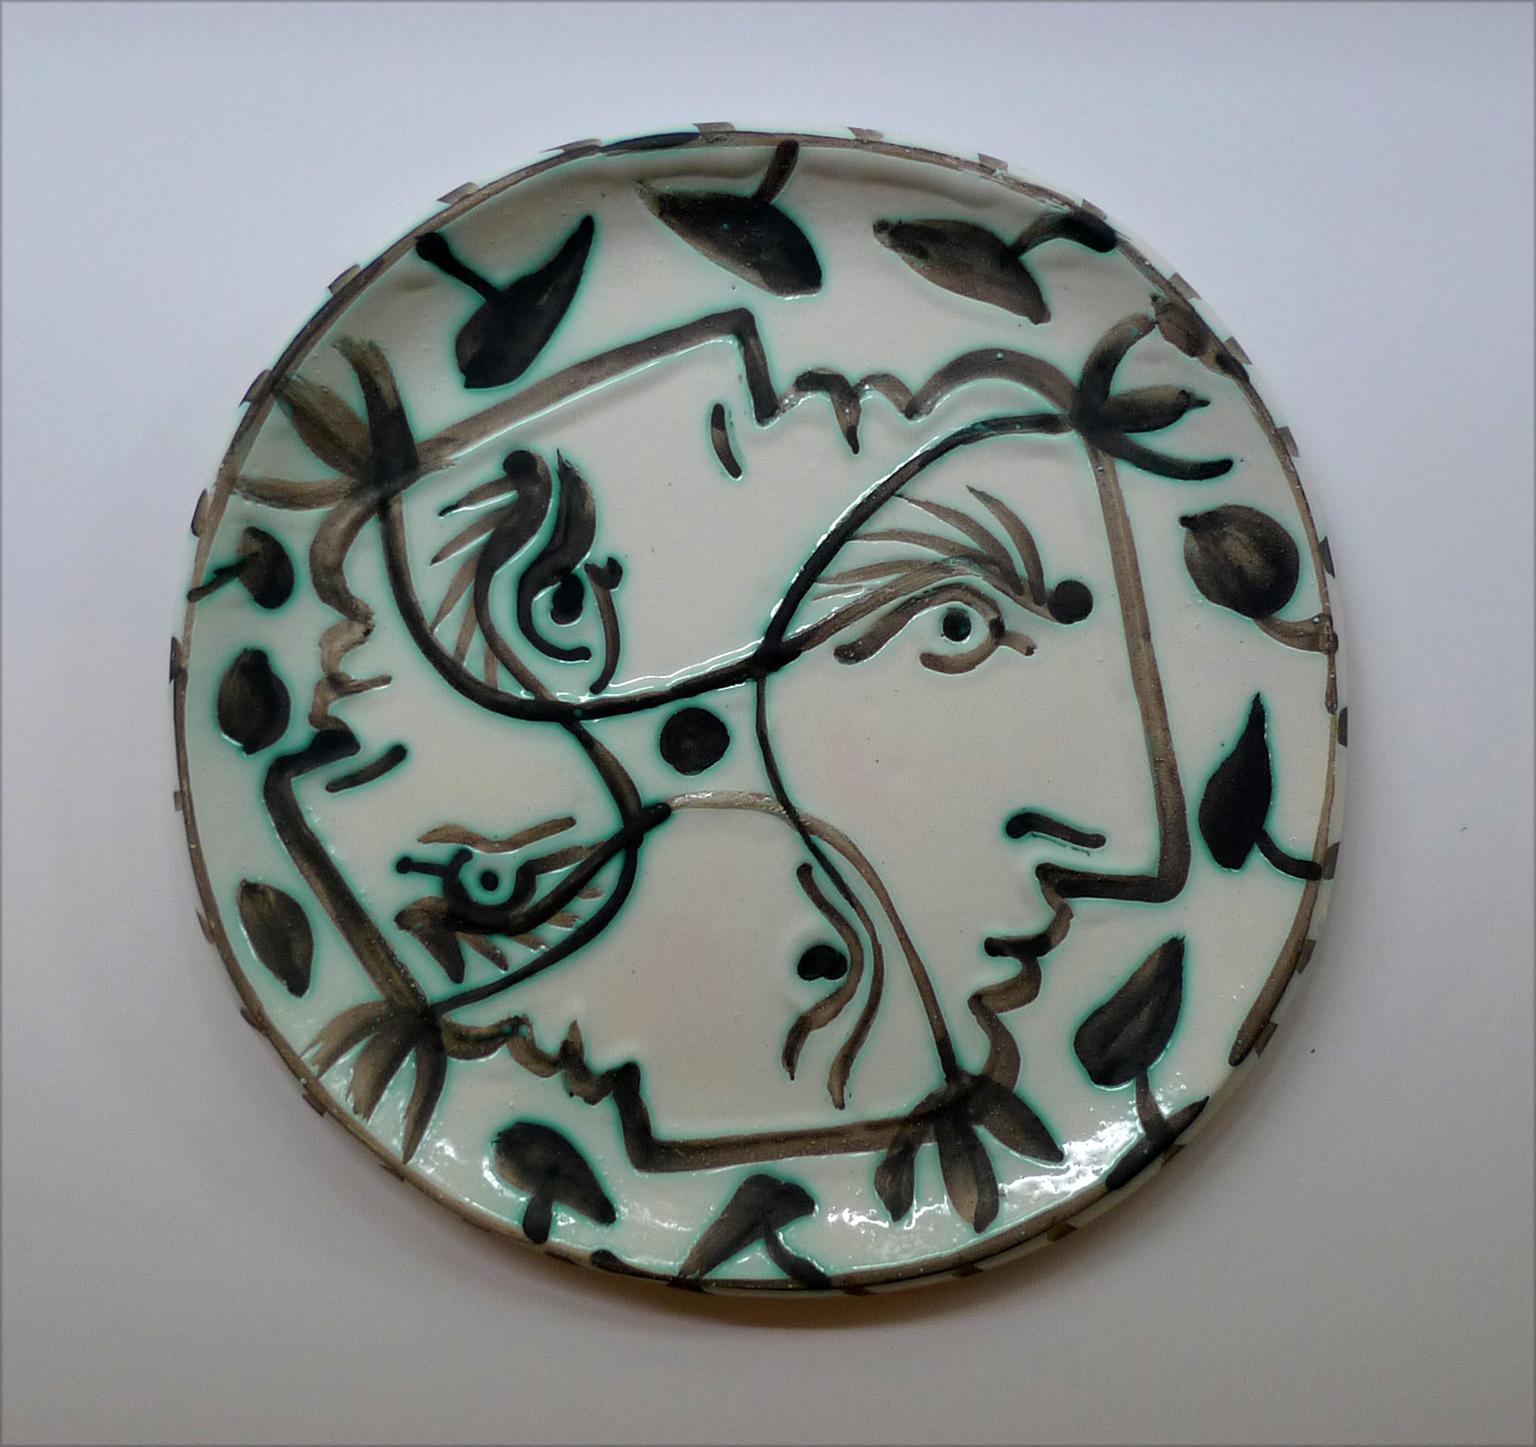 Picasso Madoura Ceramic Plate, "Quatre Profils Enlacés" (A.R. 88) - Art by Pablo Picasso